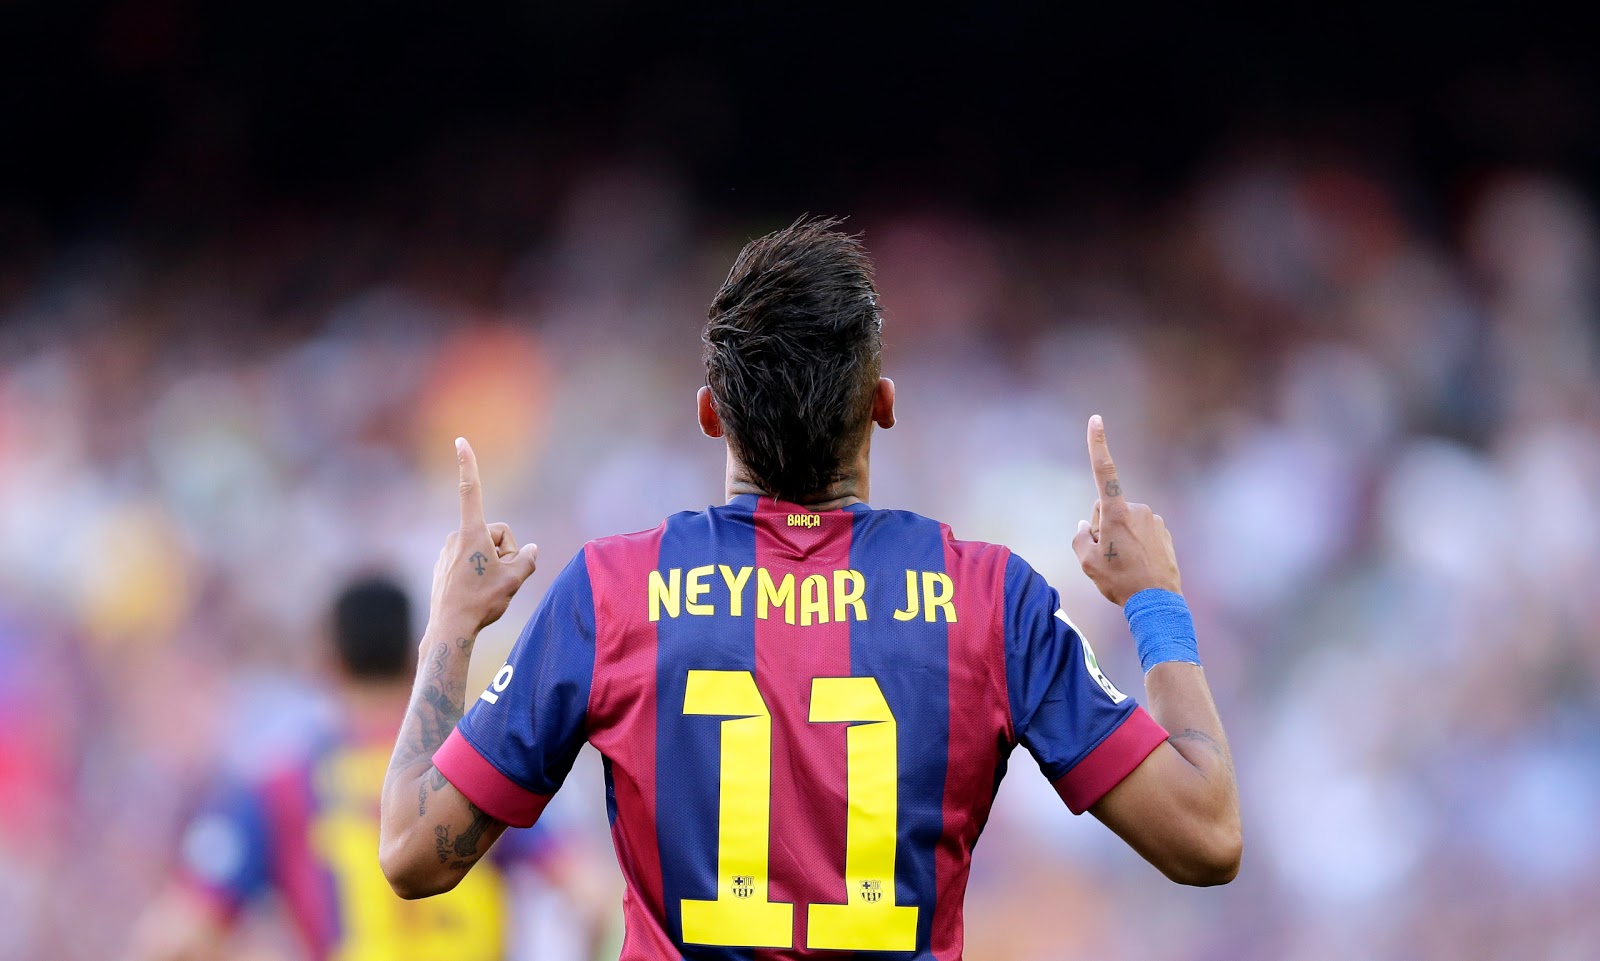 neymar hd wallpaper,player,football player,soccer player,team sport,ball game